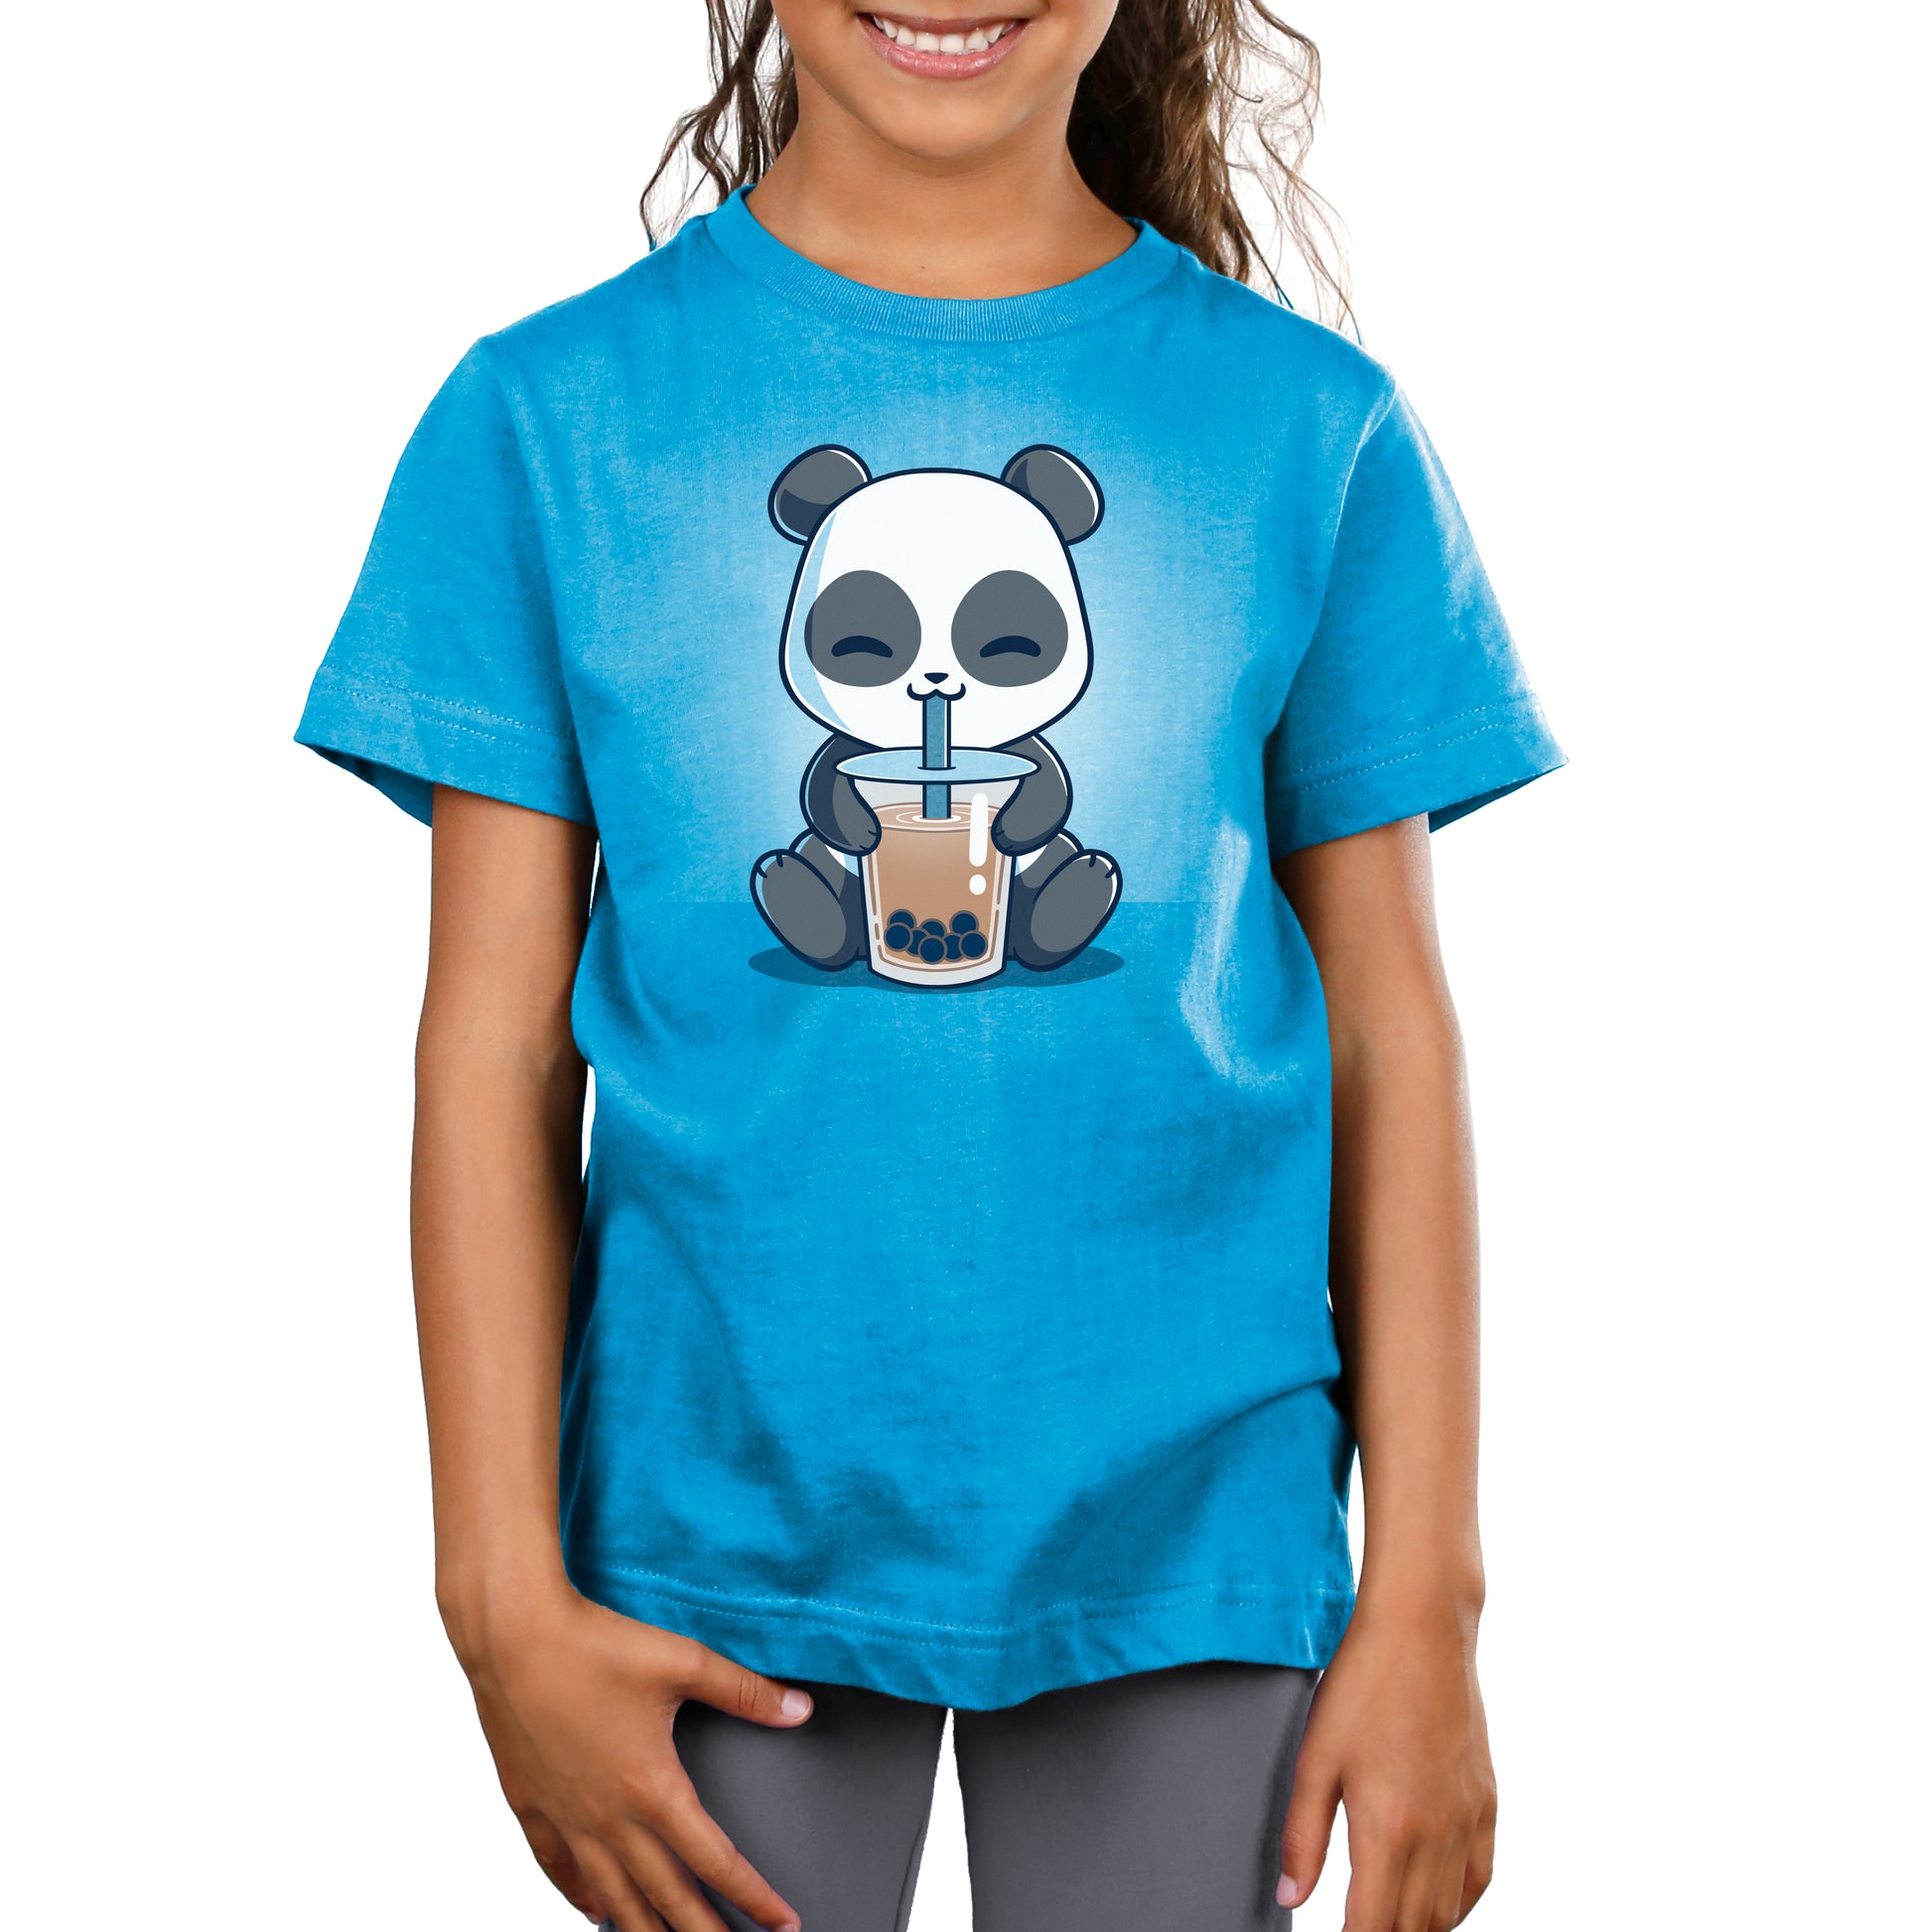 A girl wearing a TeeTurtle Boba Panda t-shirt.